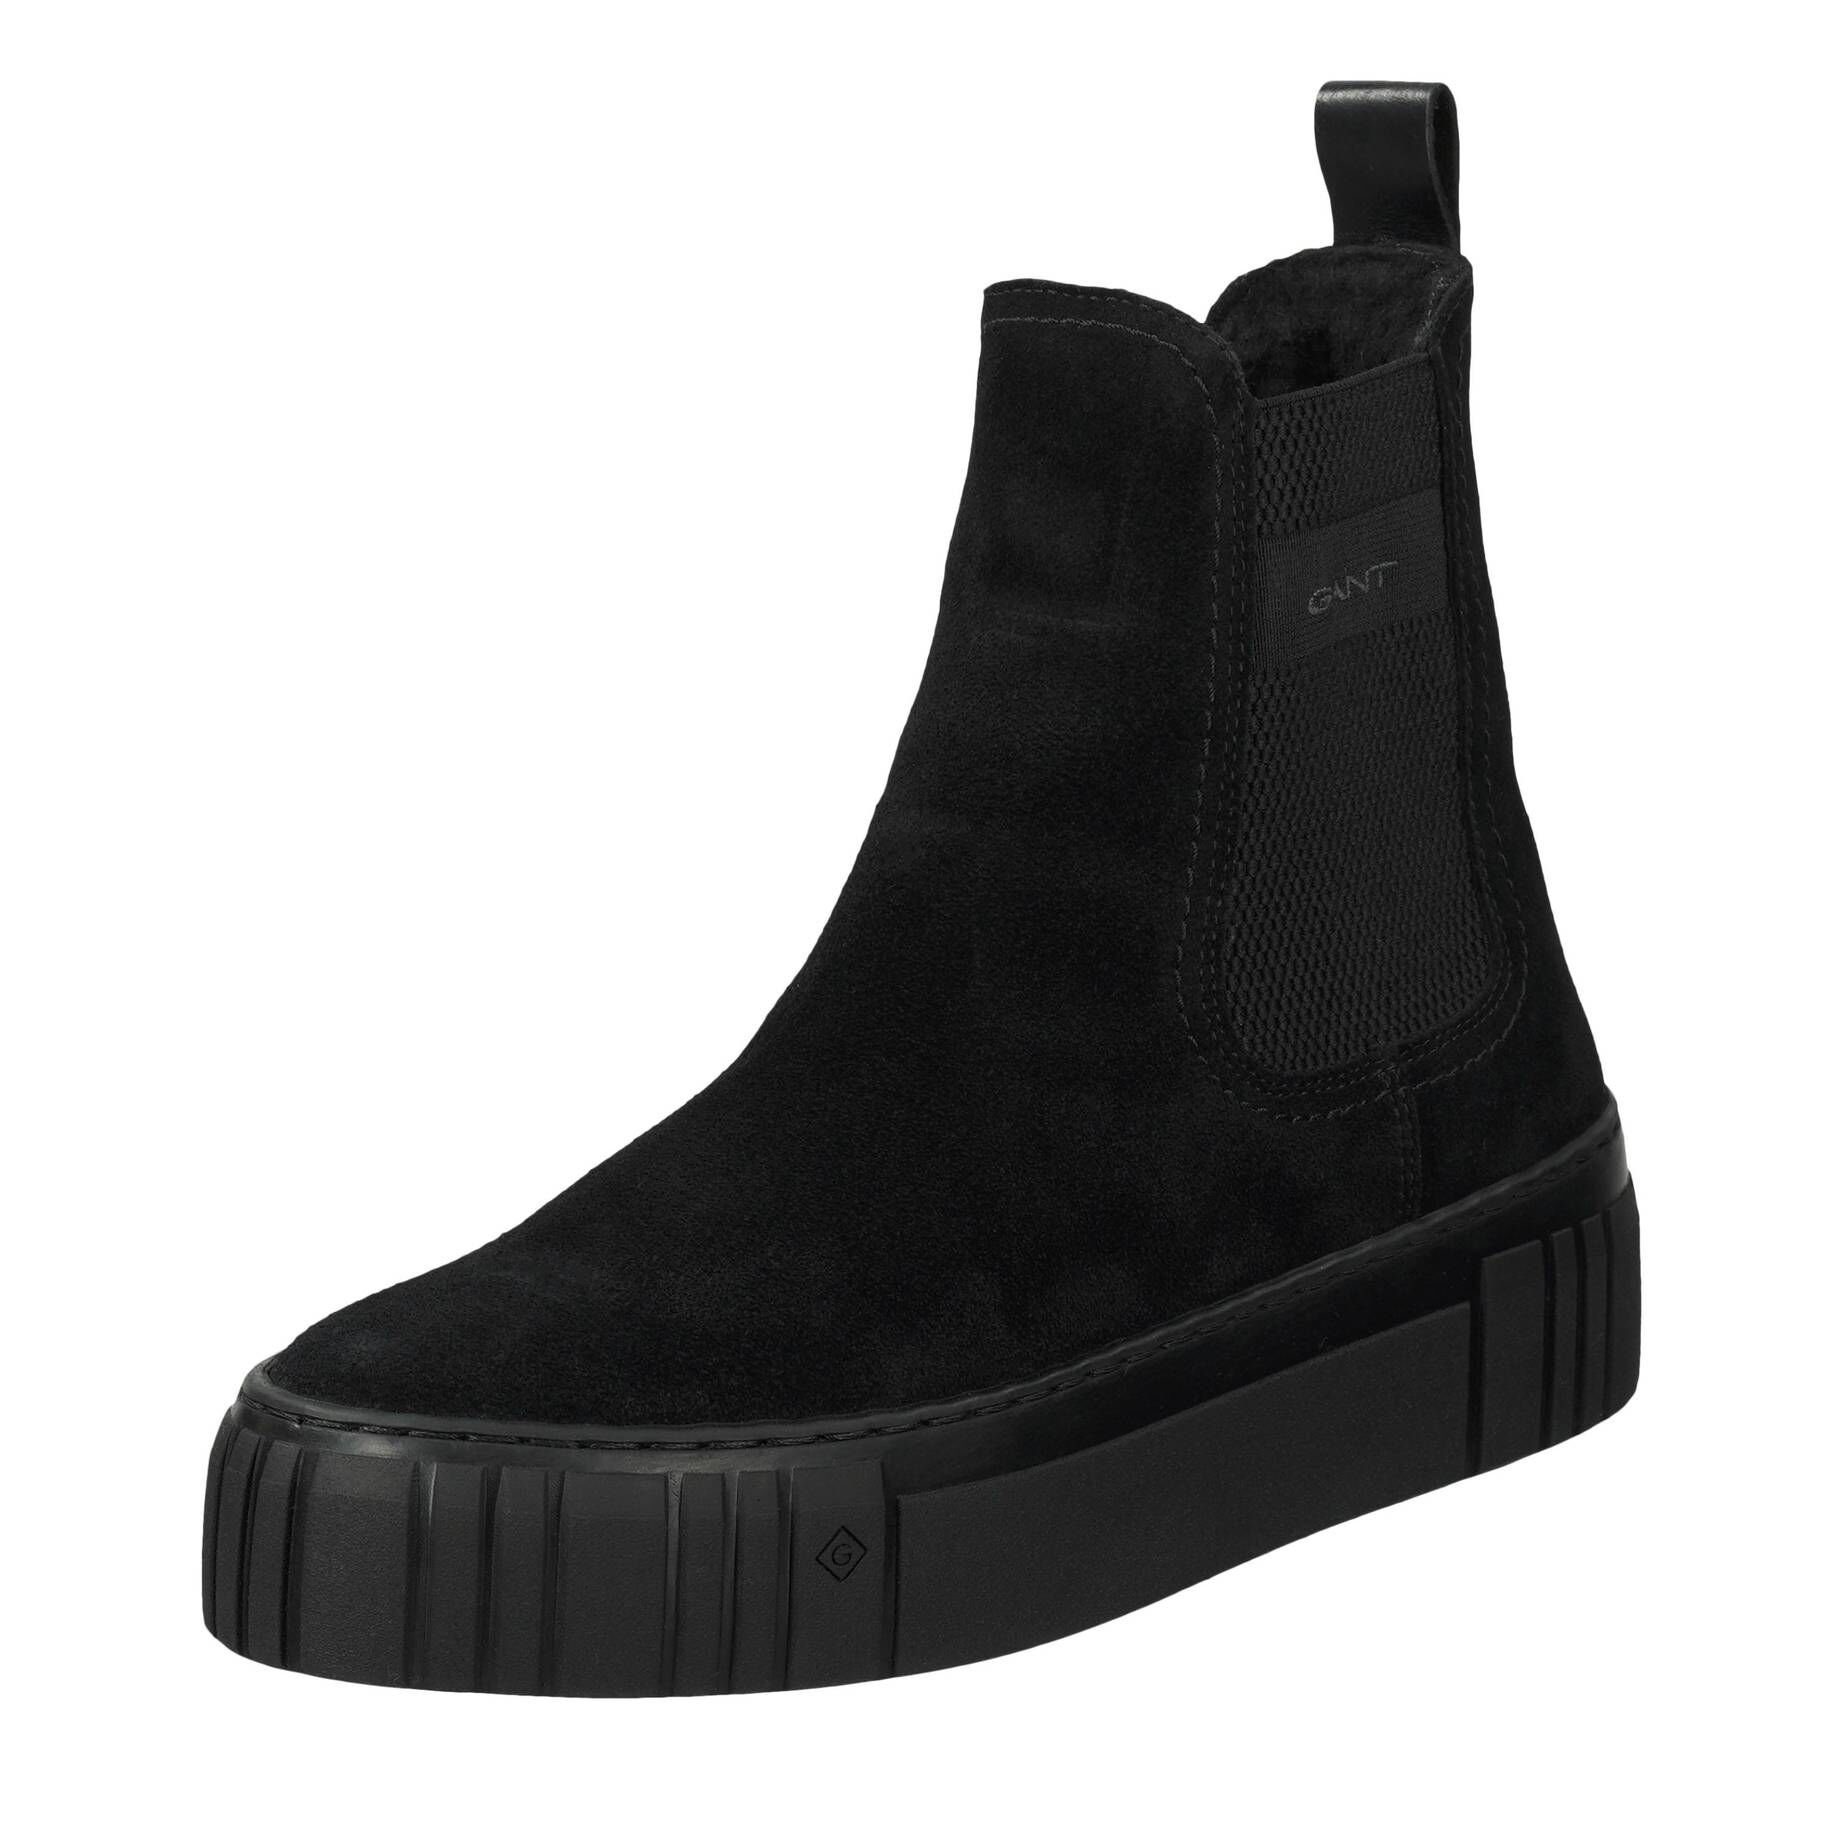 (15) Damen schwarz Stiefel Boots Chelsea SNOWMONT Gant